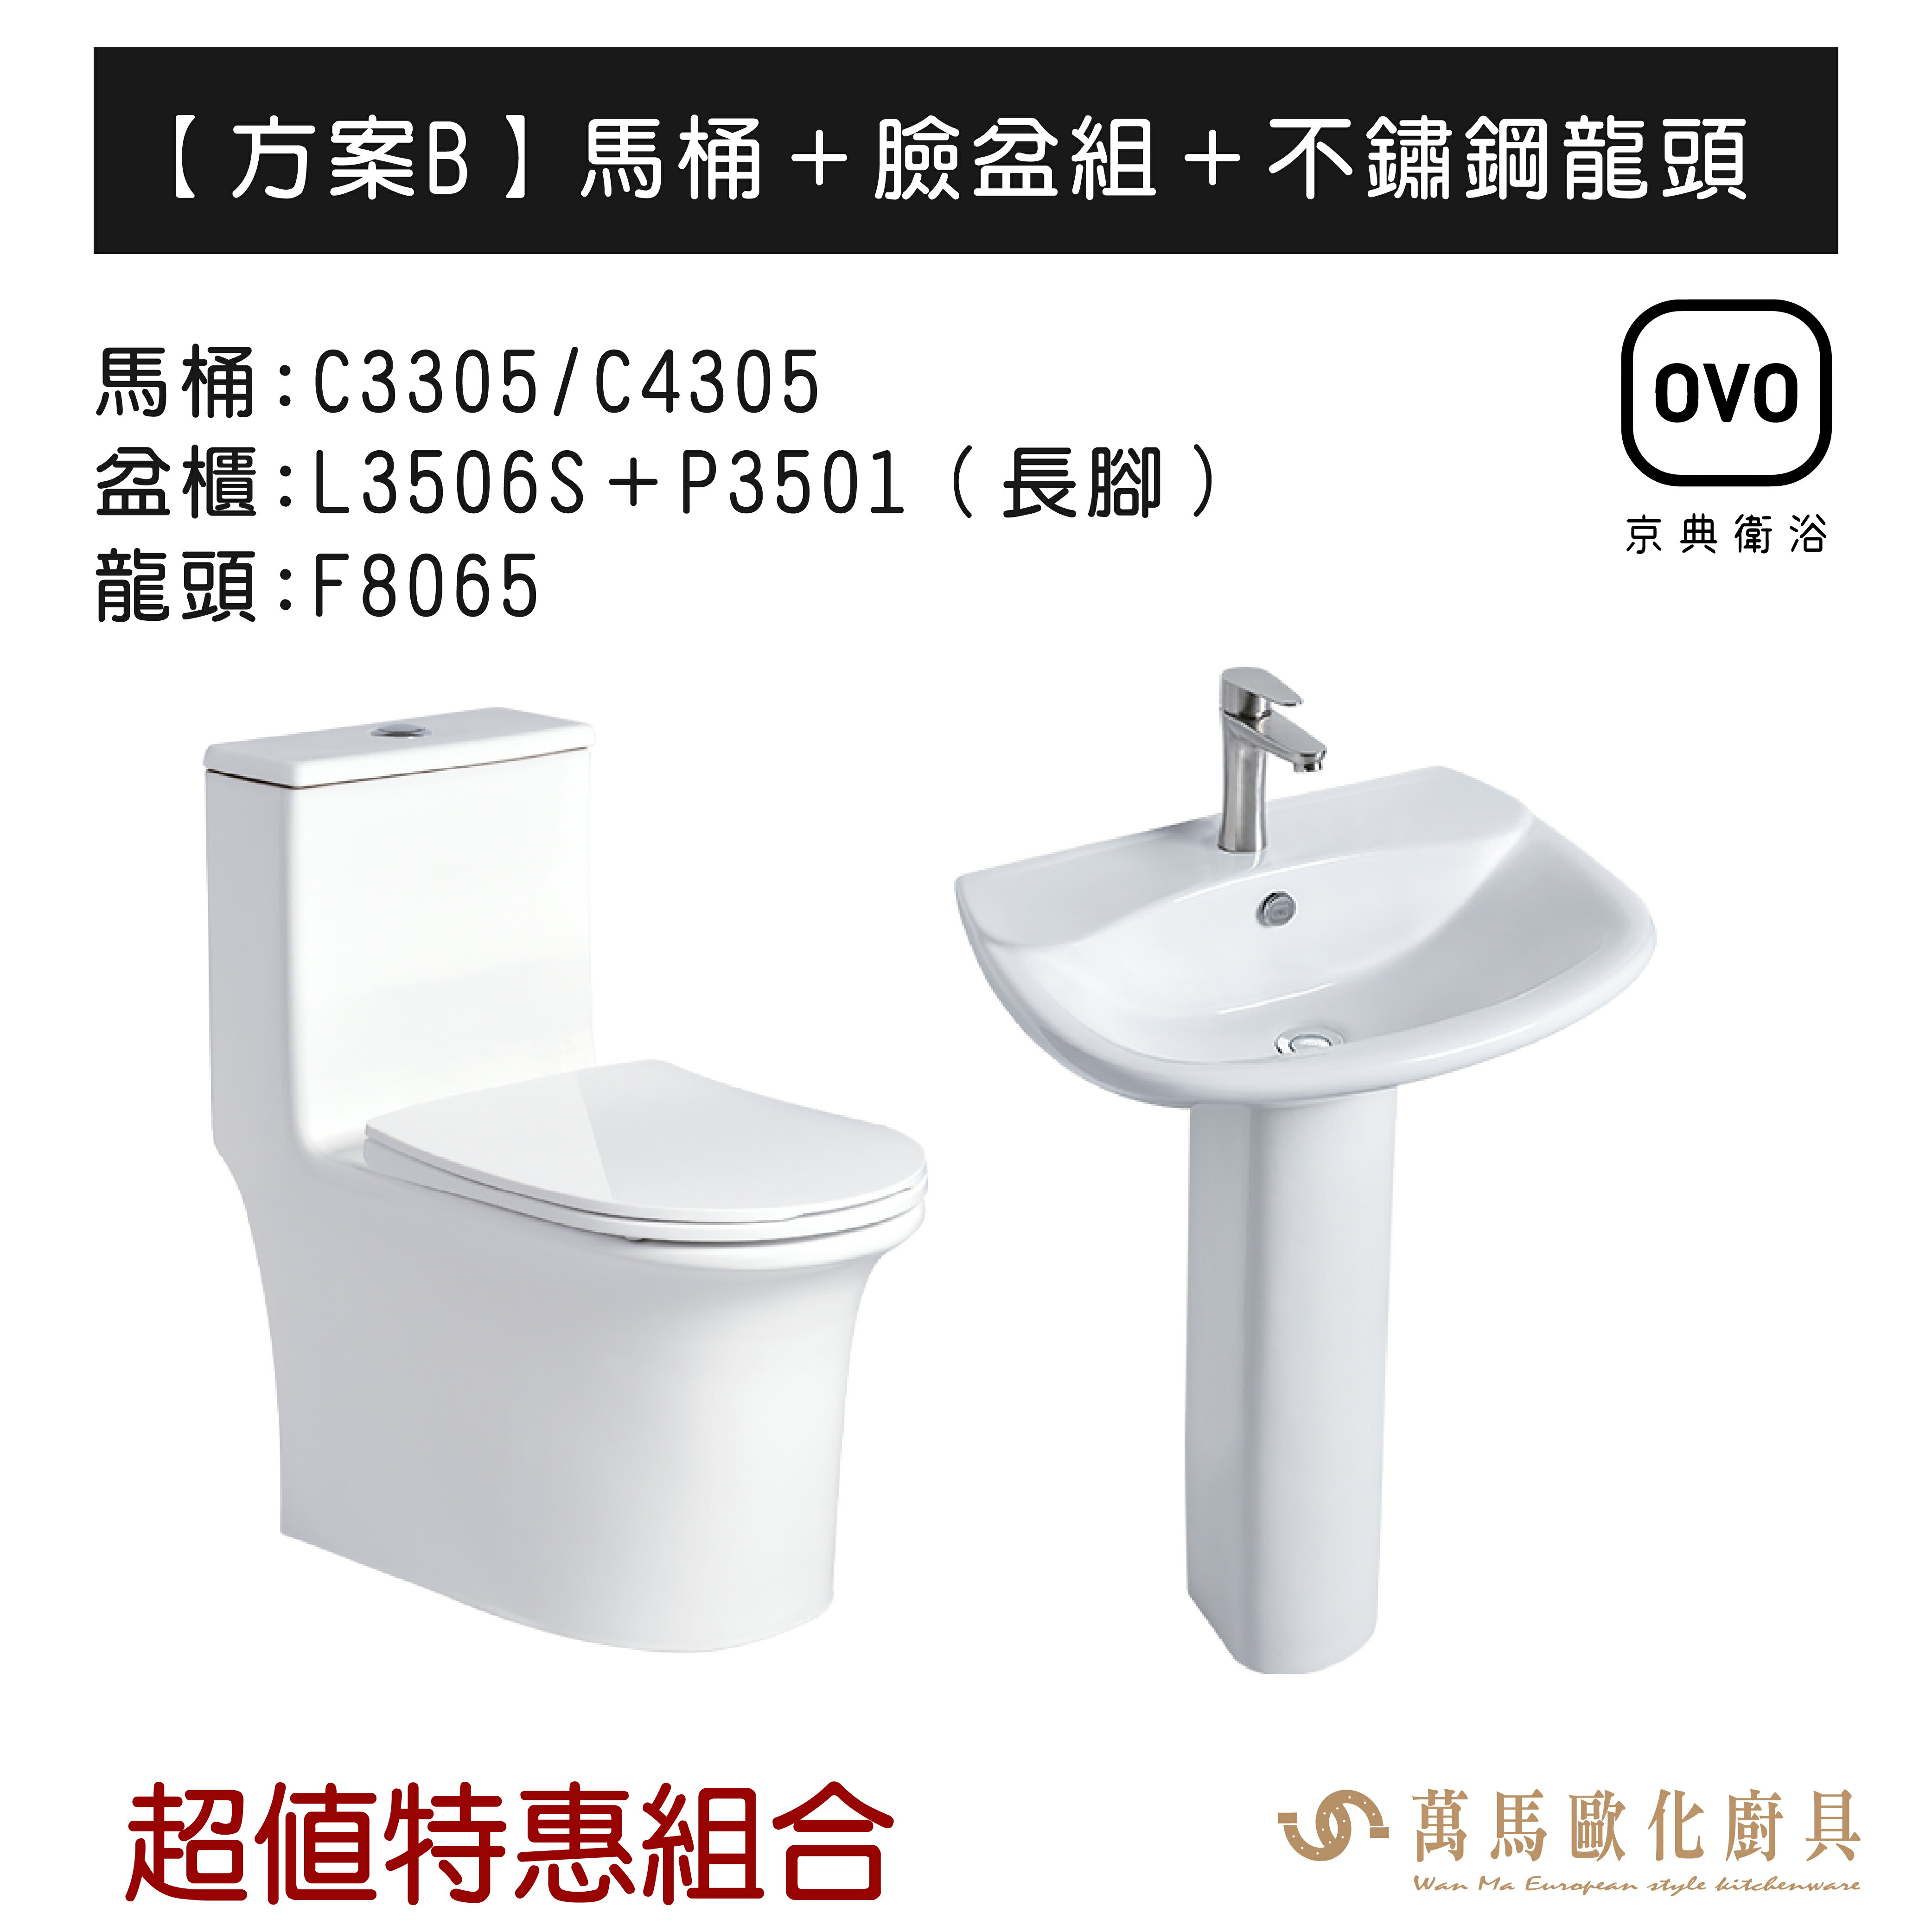 OVO京典衛浴 方案B 特惠組合系列 馬桶＋臉盆組＋不鏽鋼龍頭 暖心三合一 不含安裝